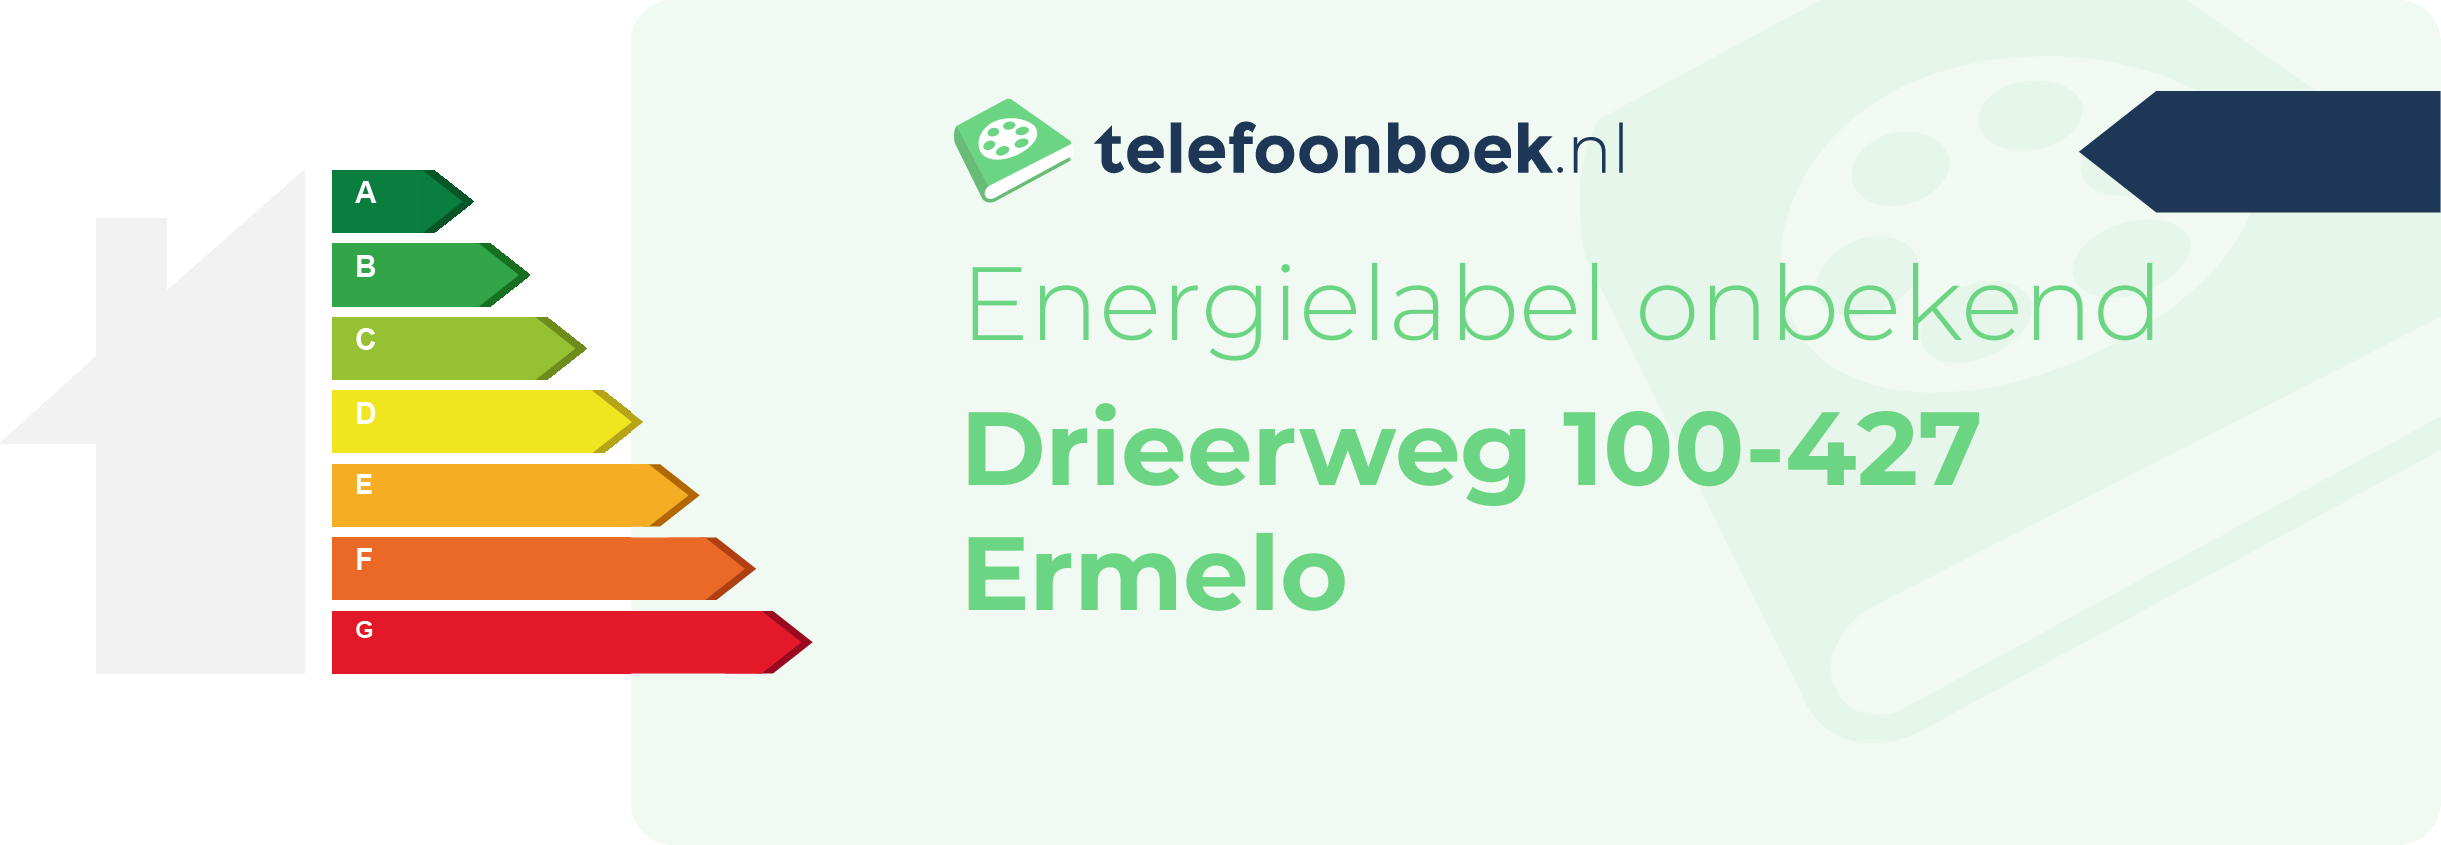 Energielabel Drieerweg 100-427 Ermelo